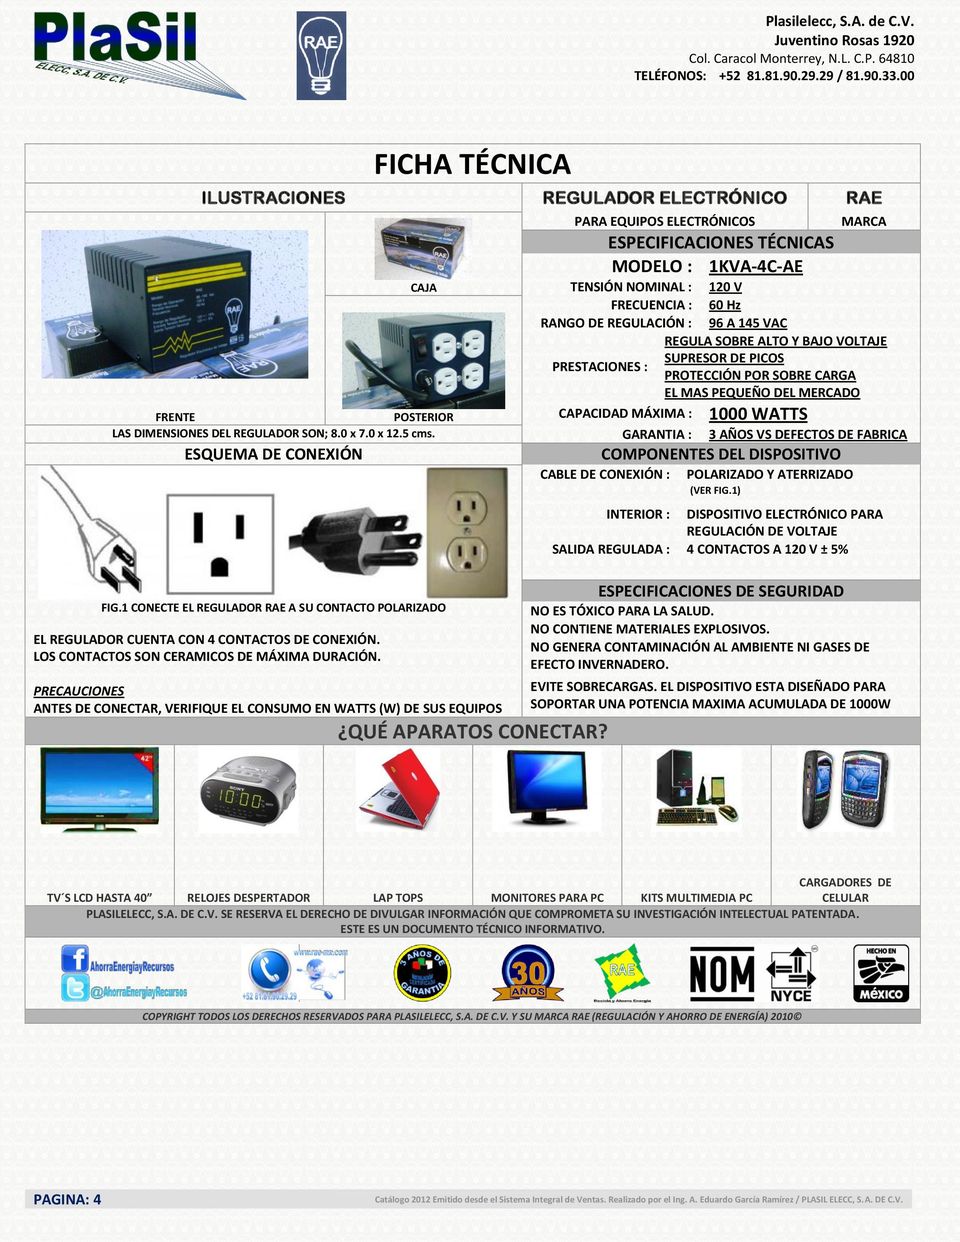 SOPORTAR UNA POTENCIA MAXIMA ACUMULADA DE 1000W TV S LCD HASTA 40 RELOJES DESPERTADOR LAP TOPS MONITORES PARA PC KITS MULTIMEDIA PC